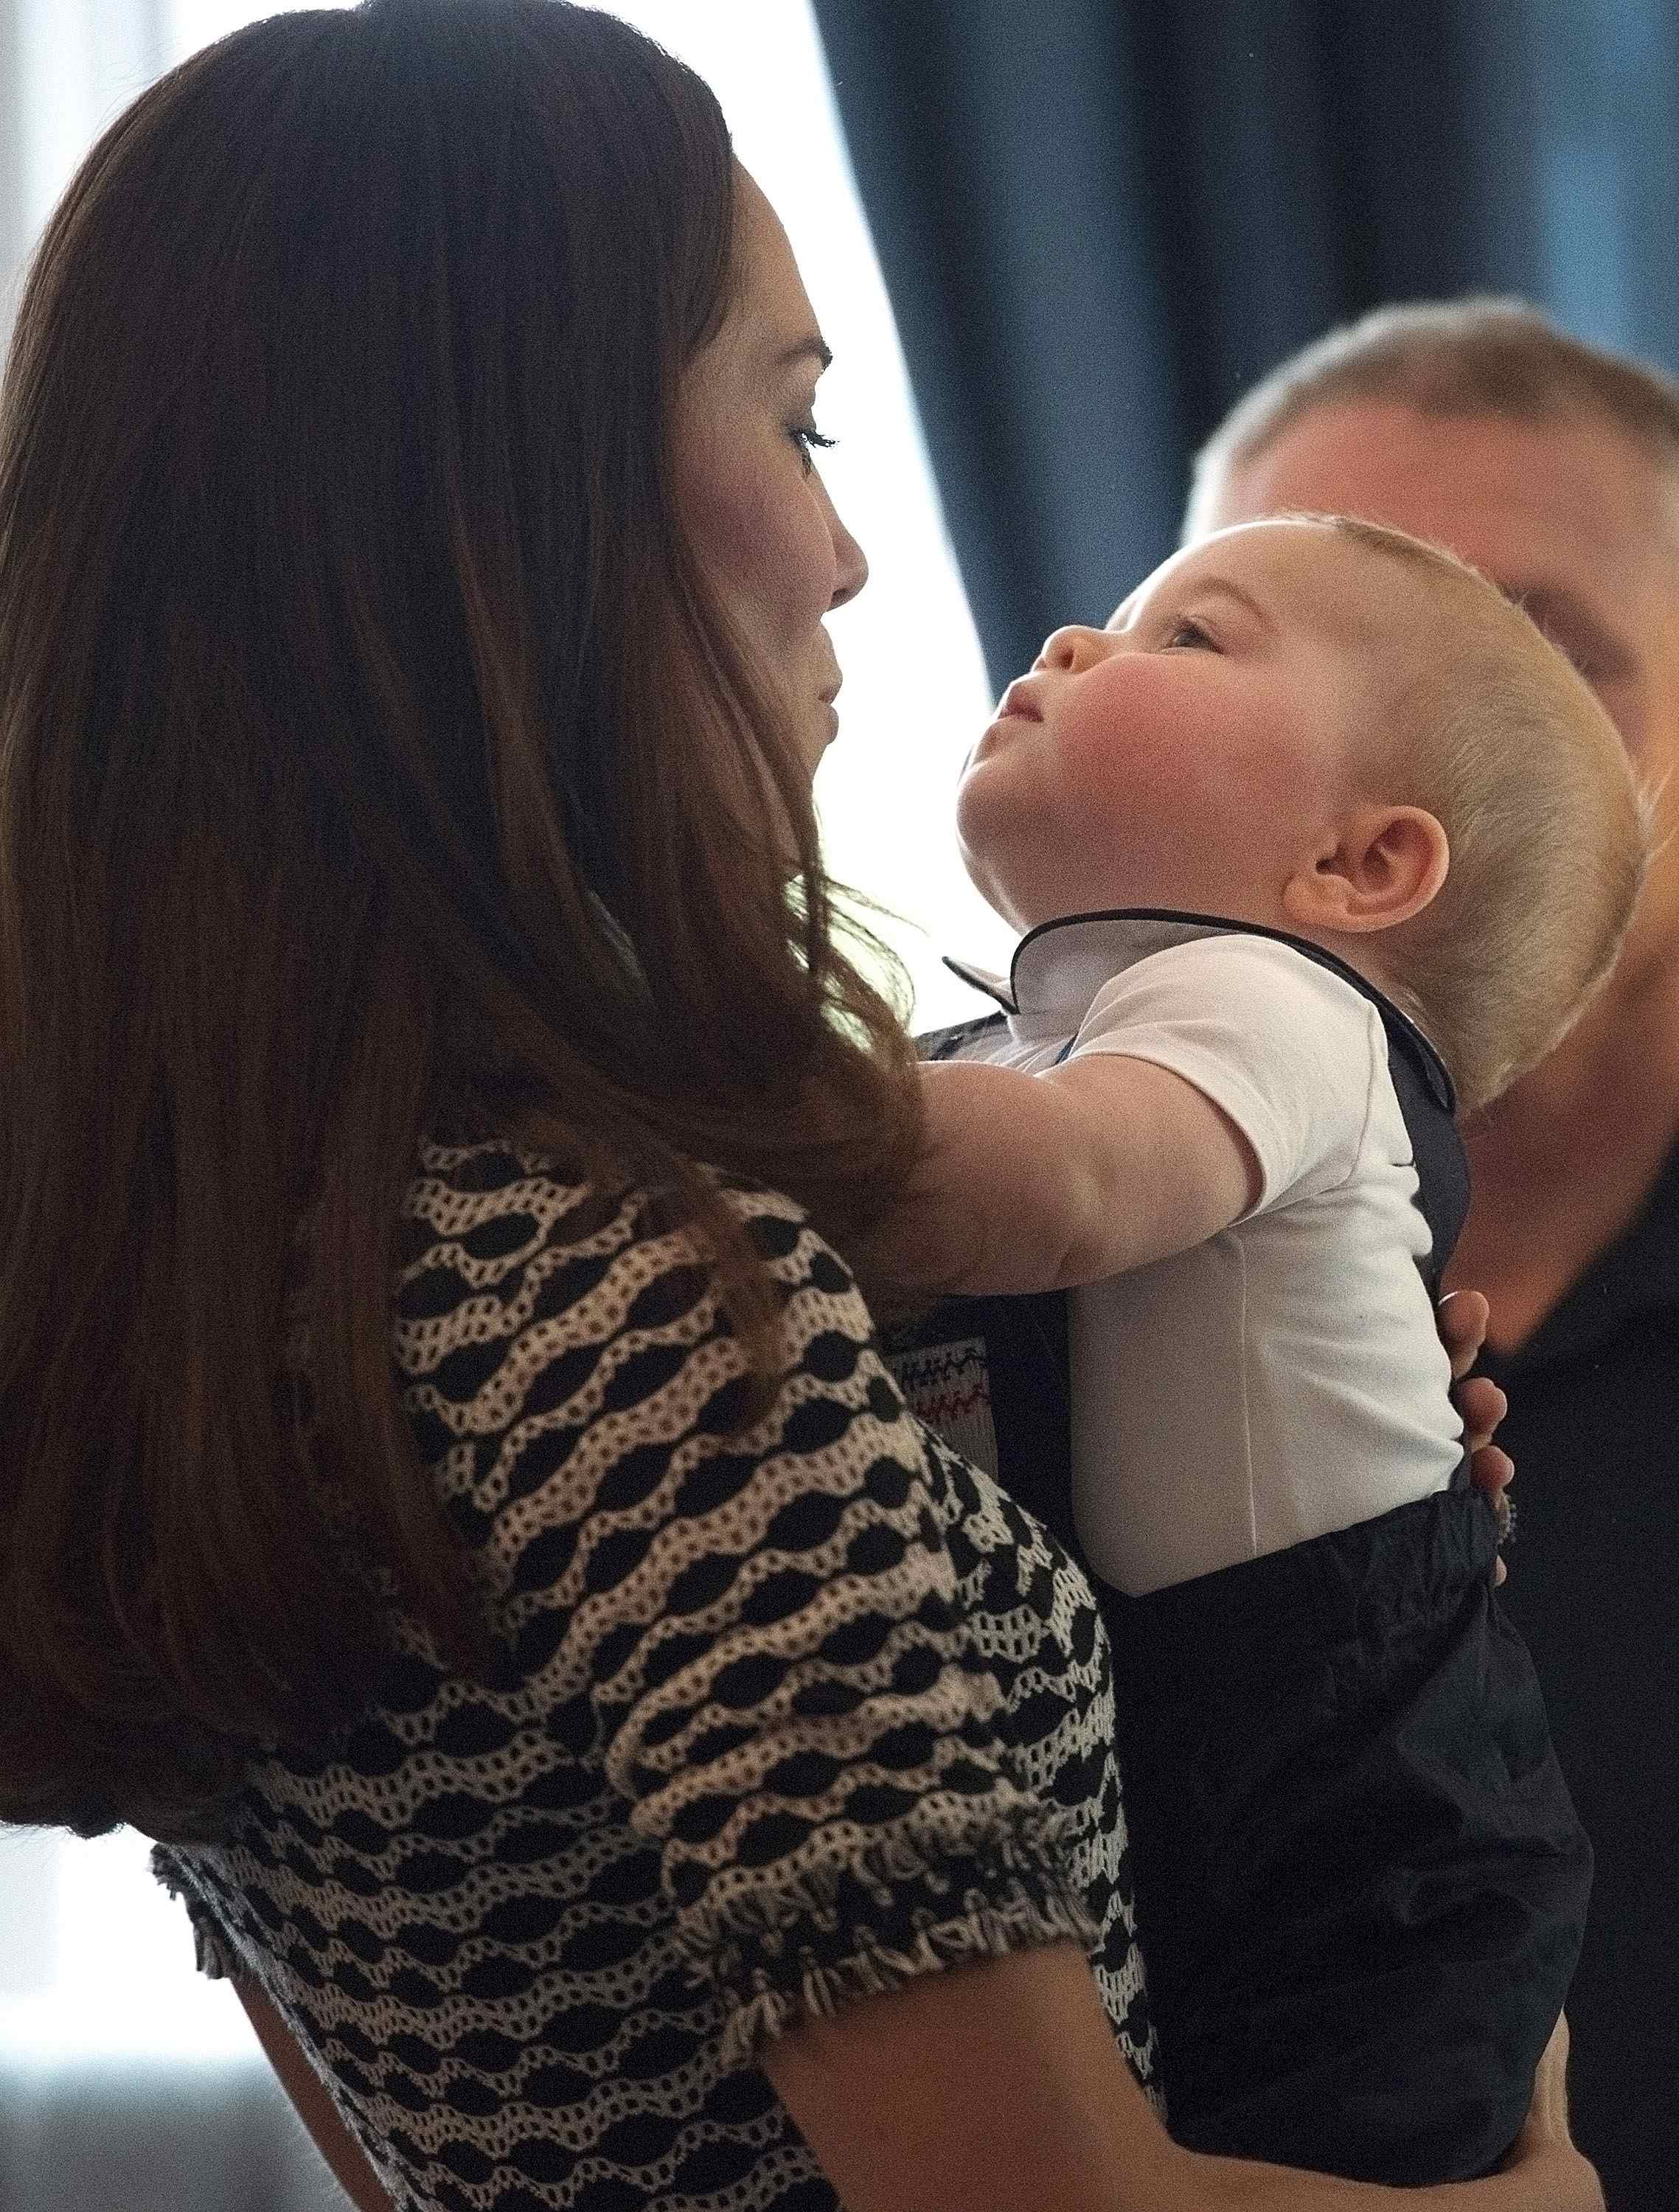 Принц Джордж дергал за волосы Кейт Миддлтон на встрече в Веллингтоне: опубликованы фото